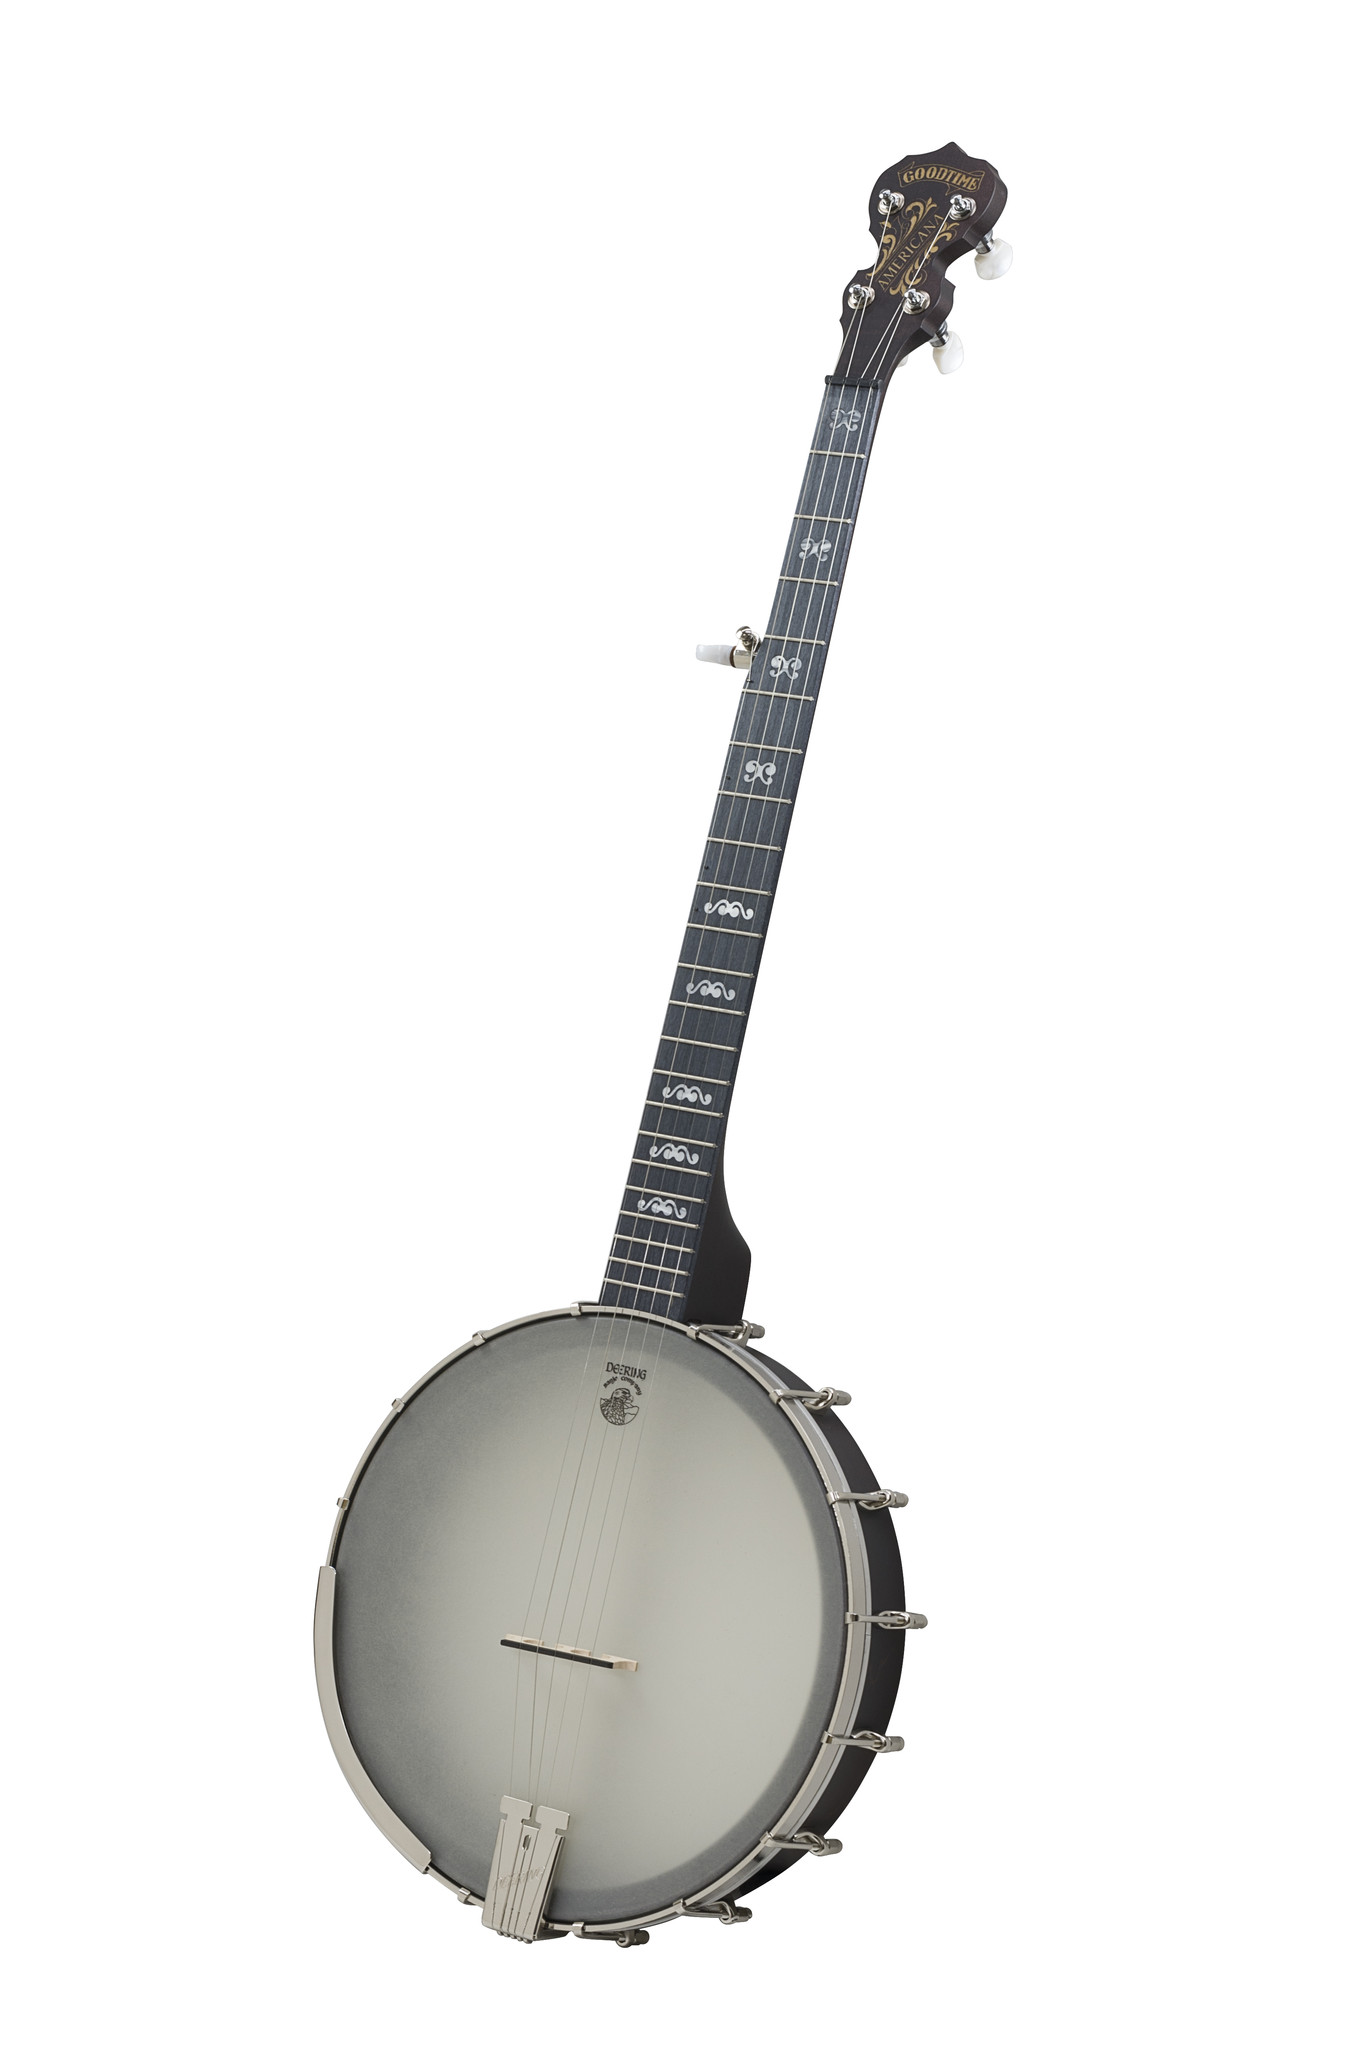 deering banjos for sale.